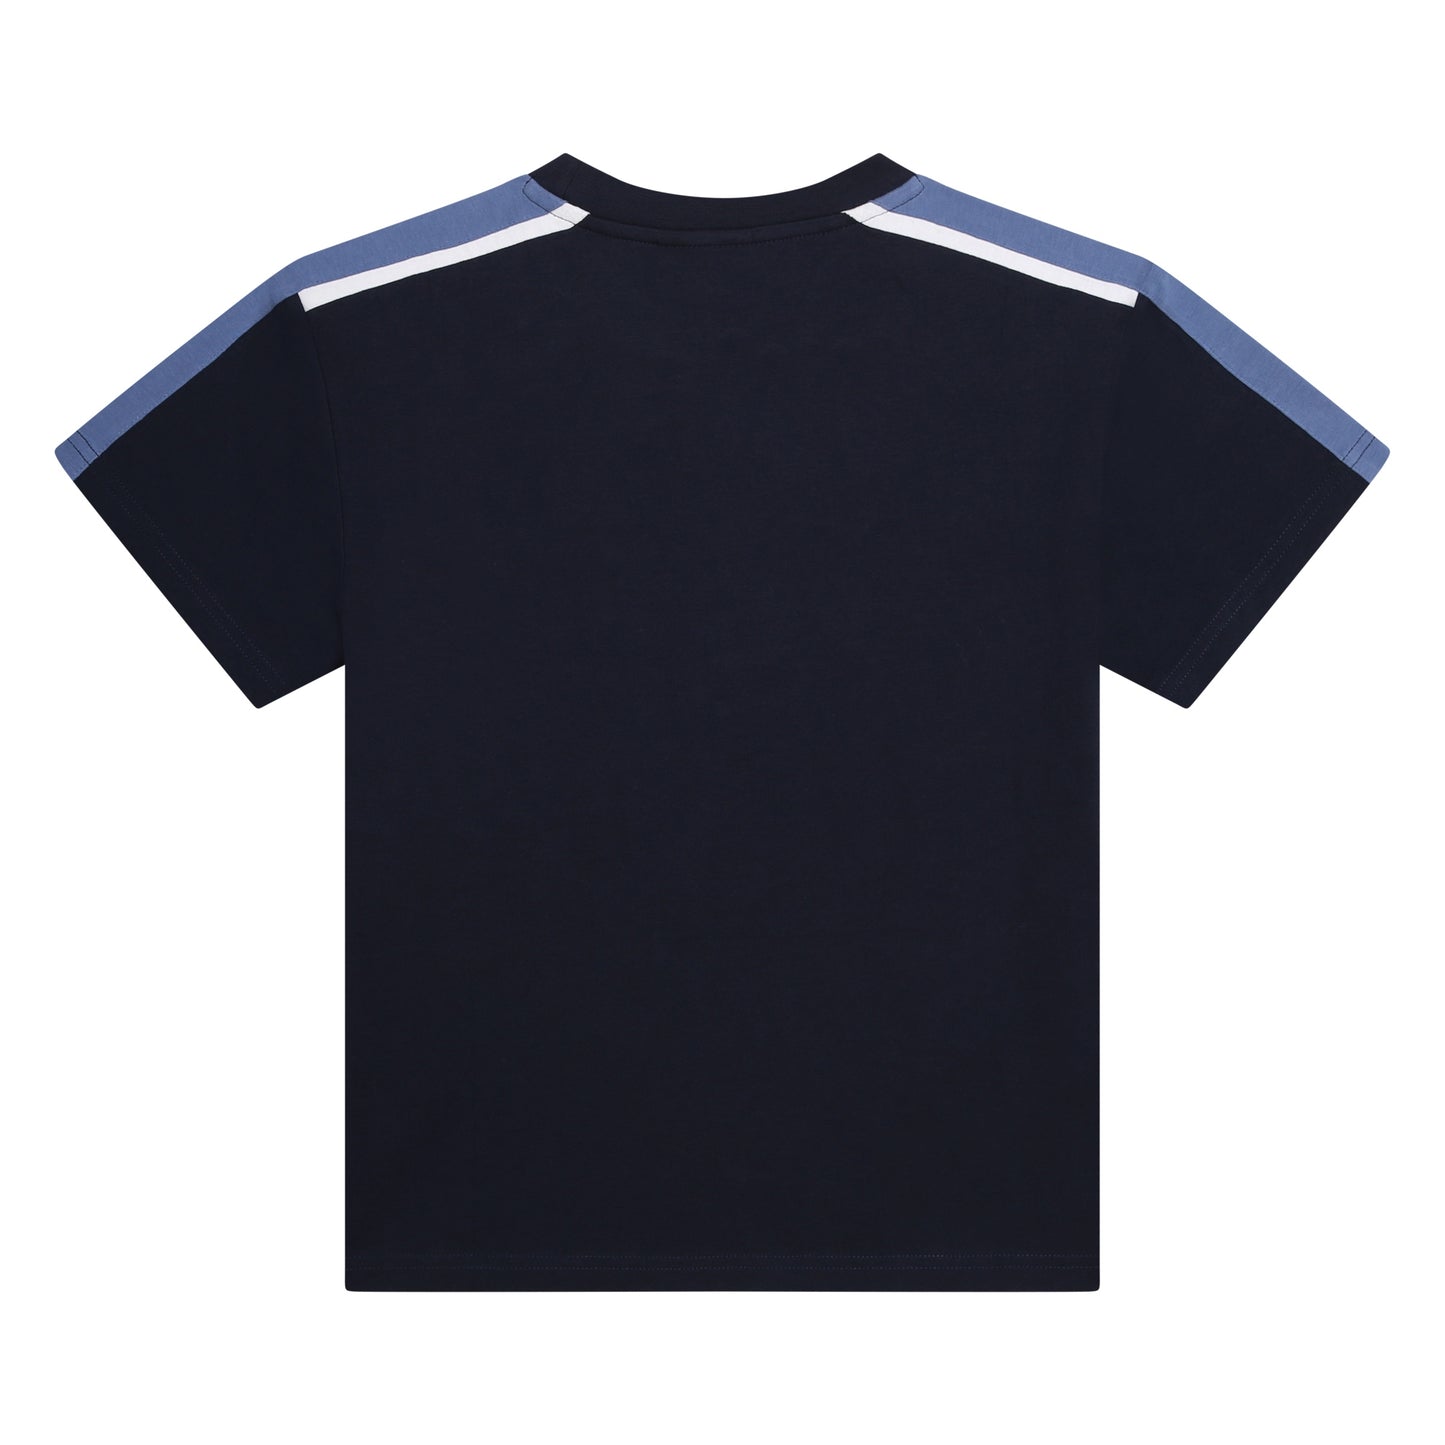 Hugo Boss Boys Navy T-Shirt _ J50722-849